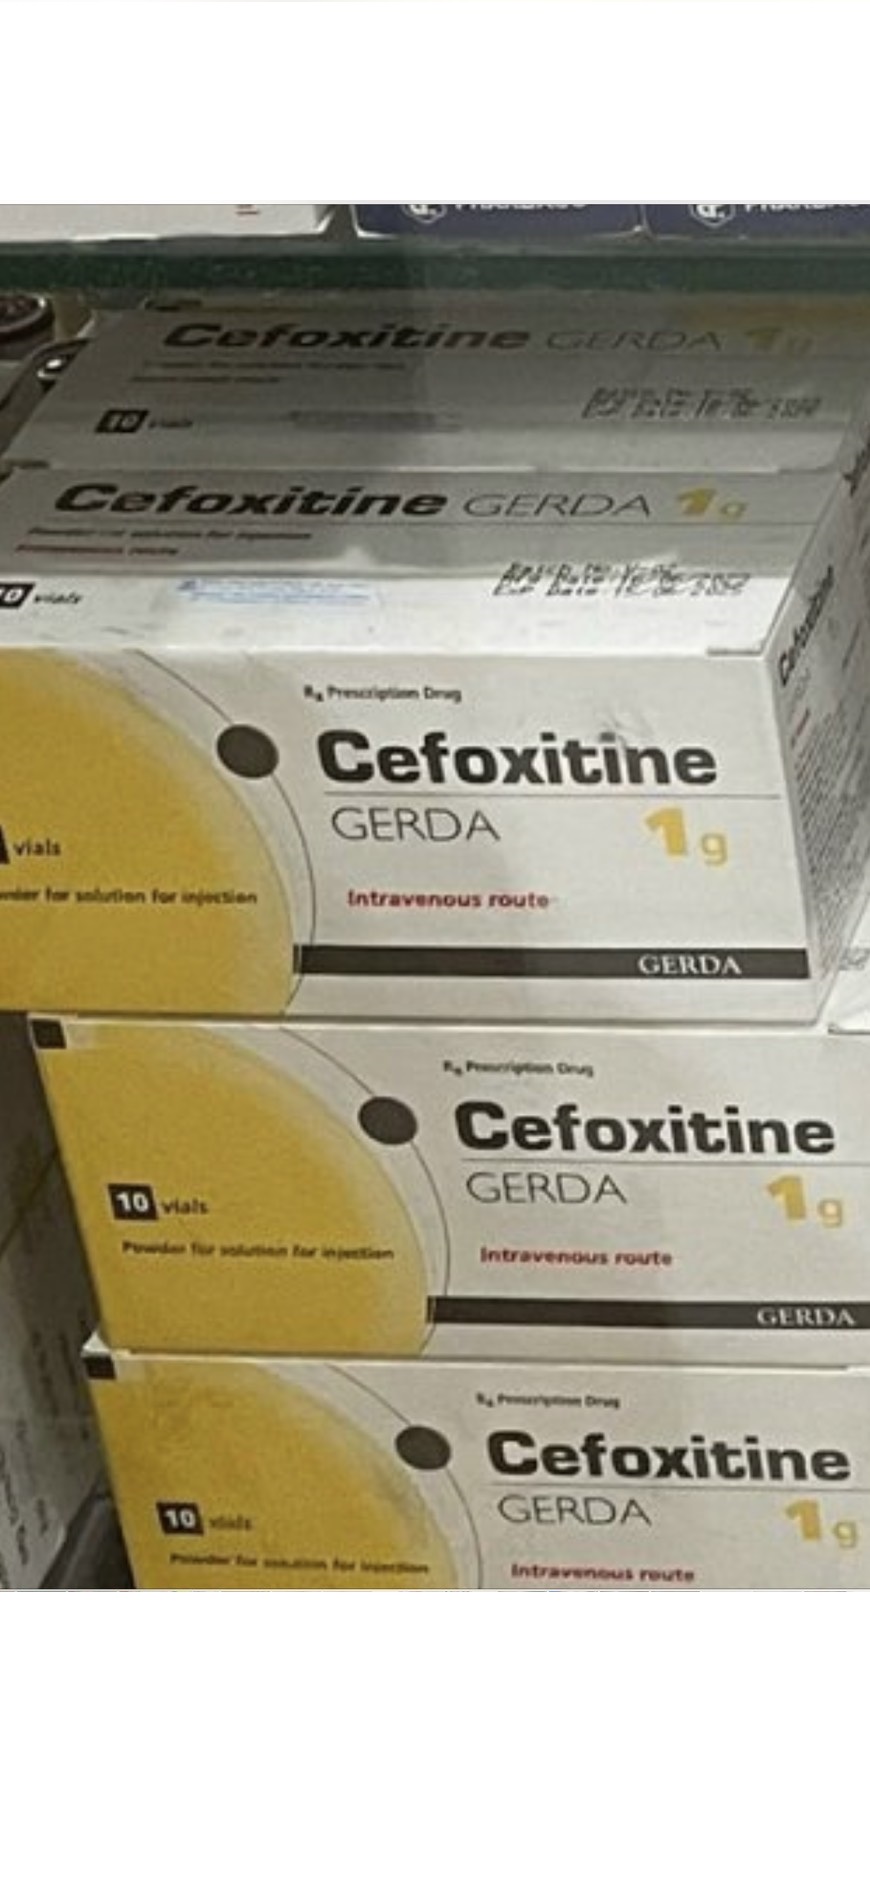 Cefoxitine 1g Gerda